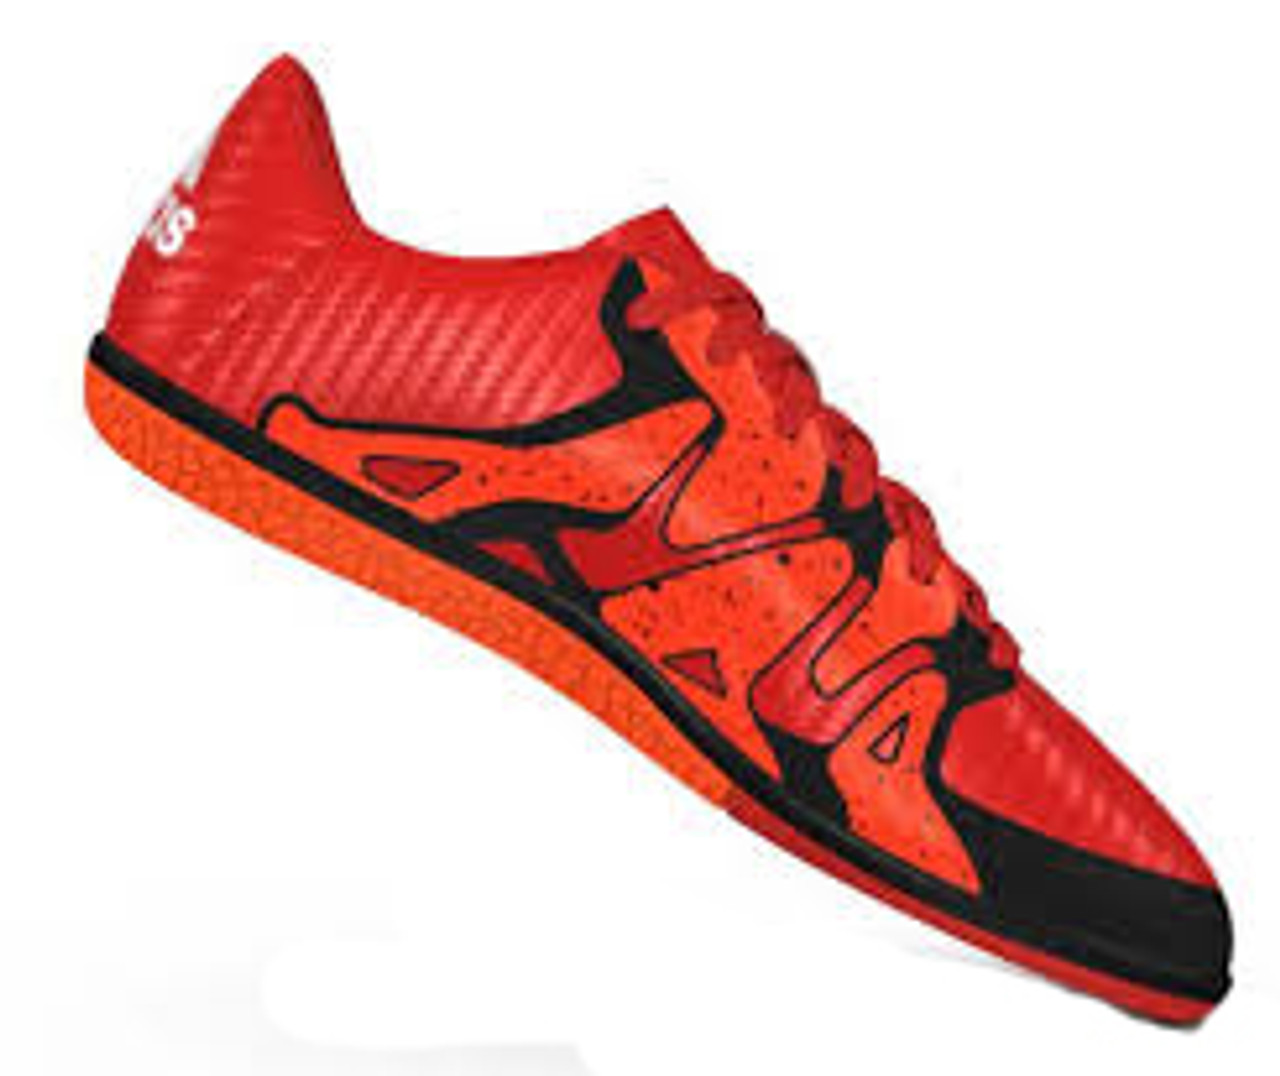 adidas soccer shoes orange